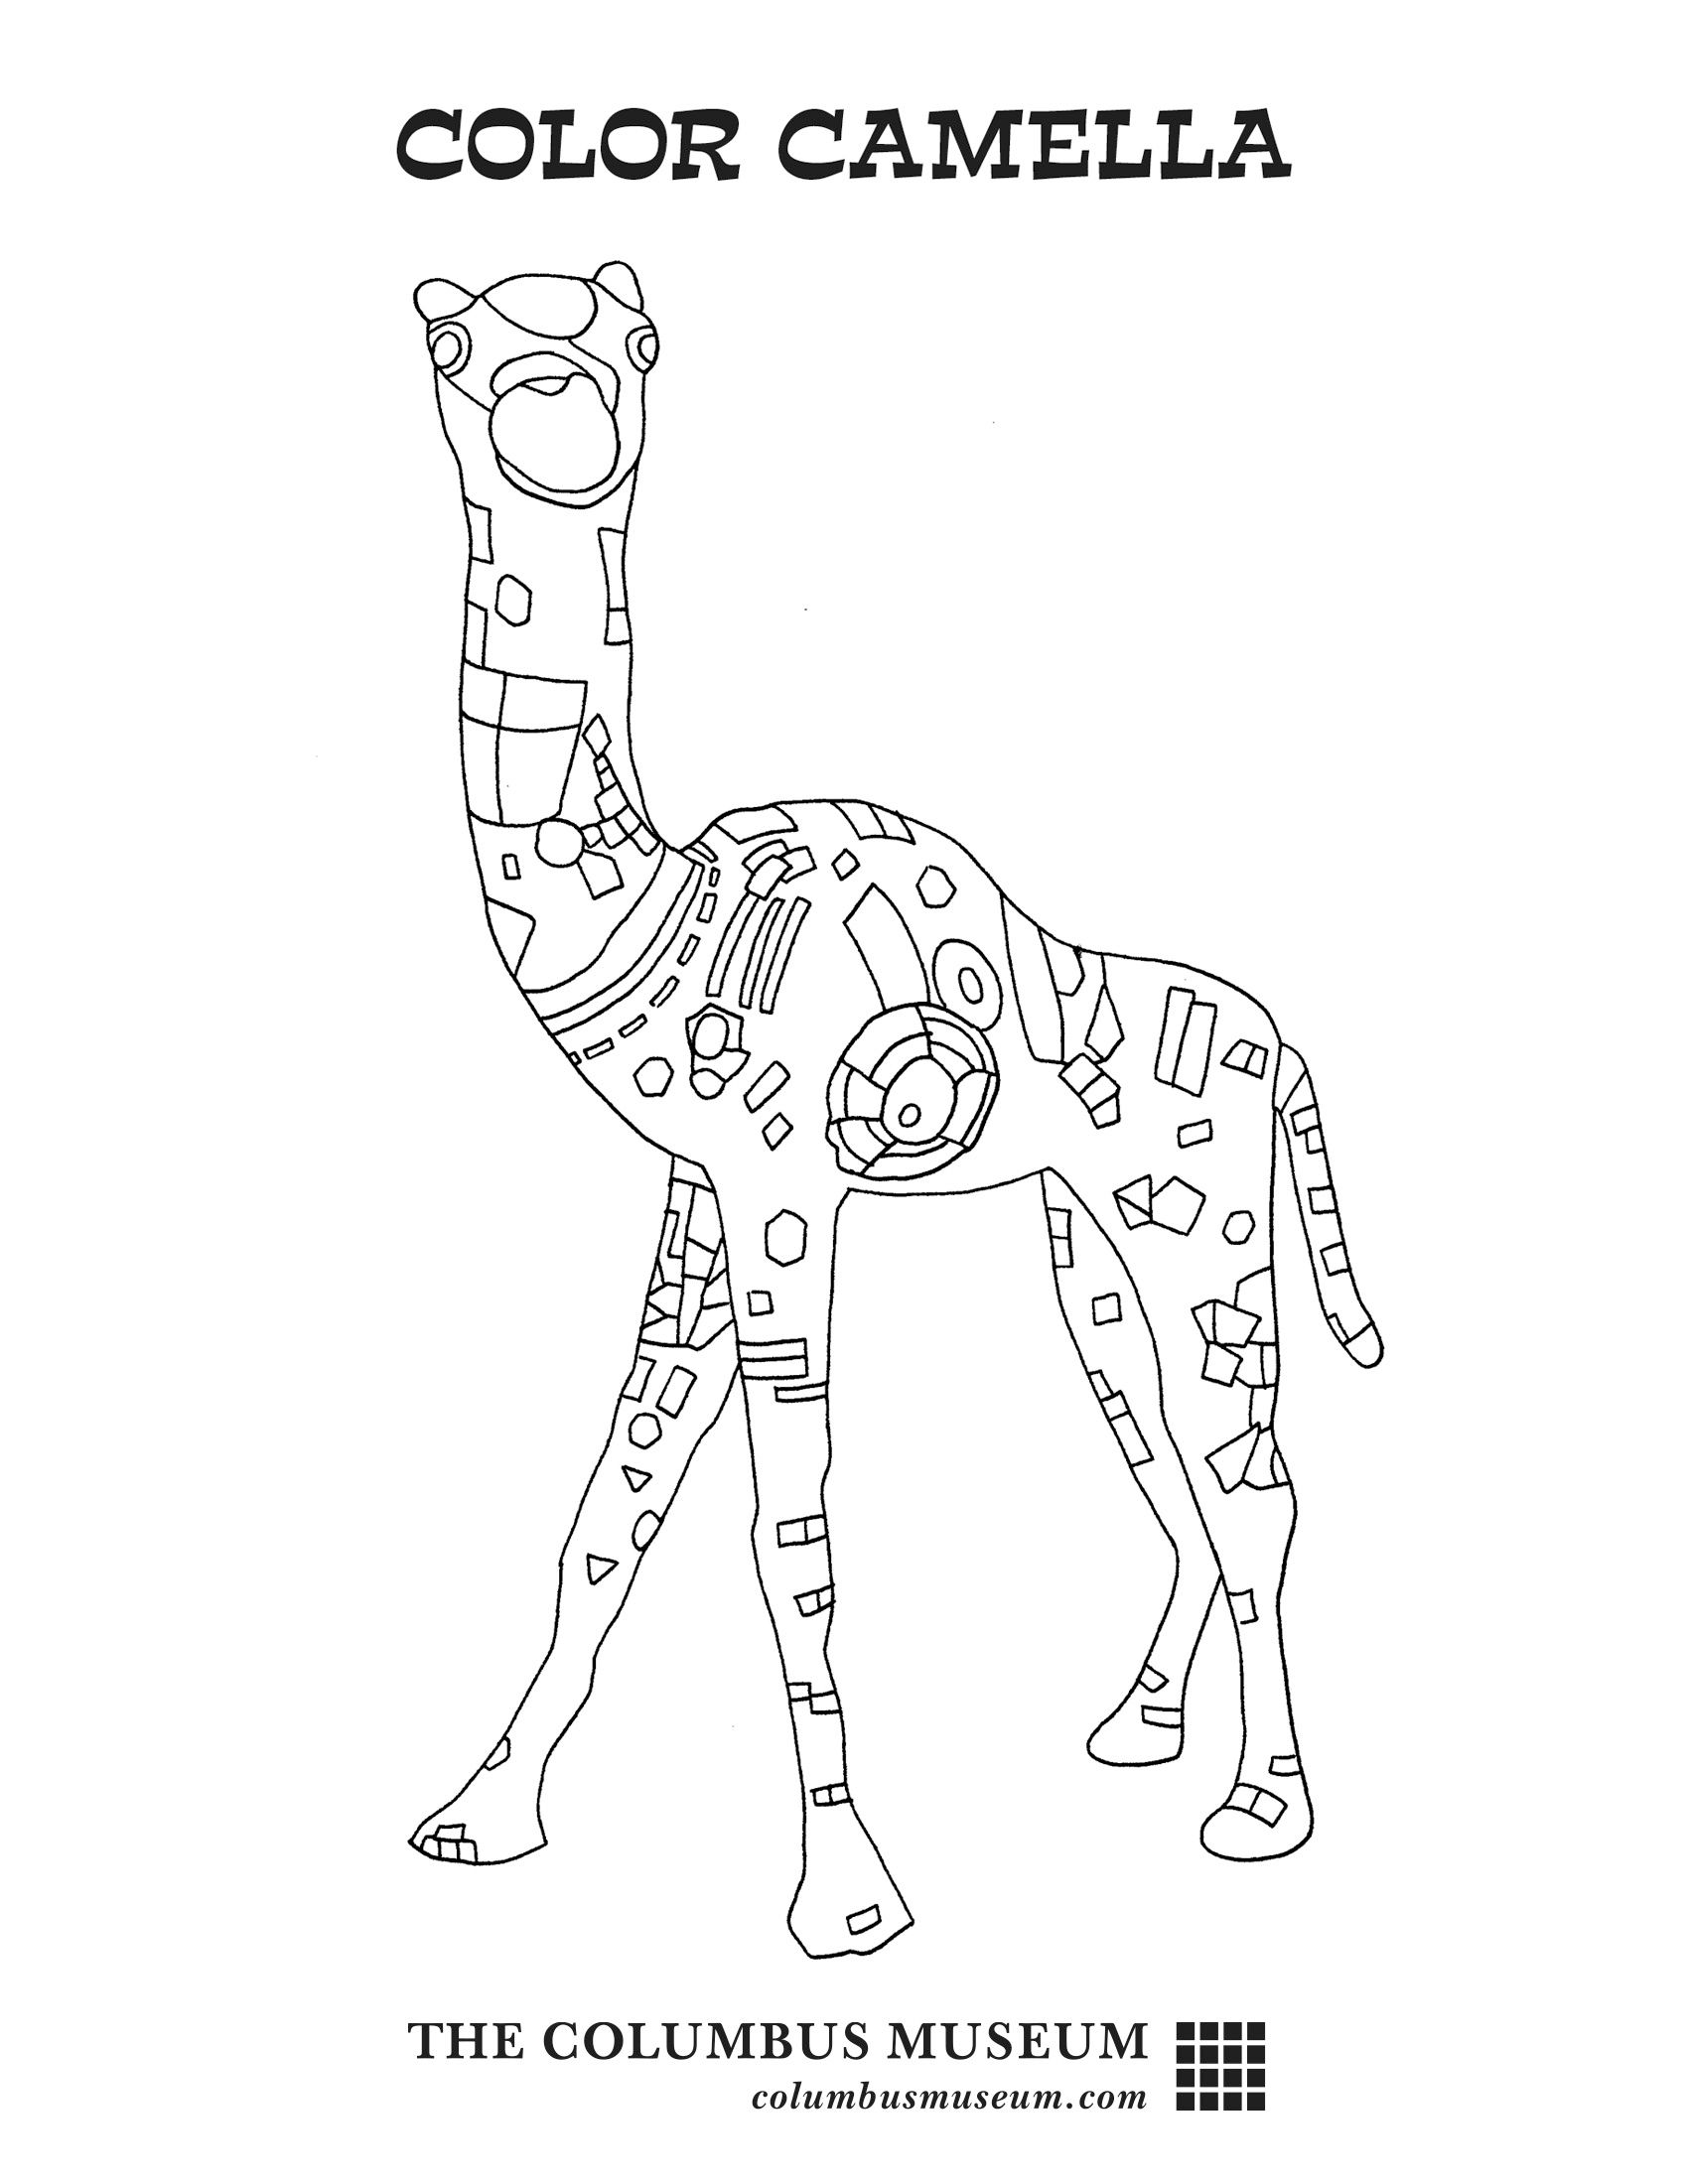 Camella